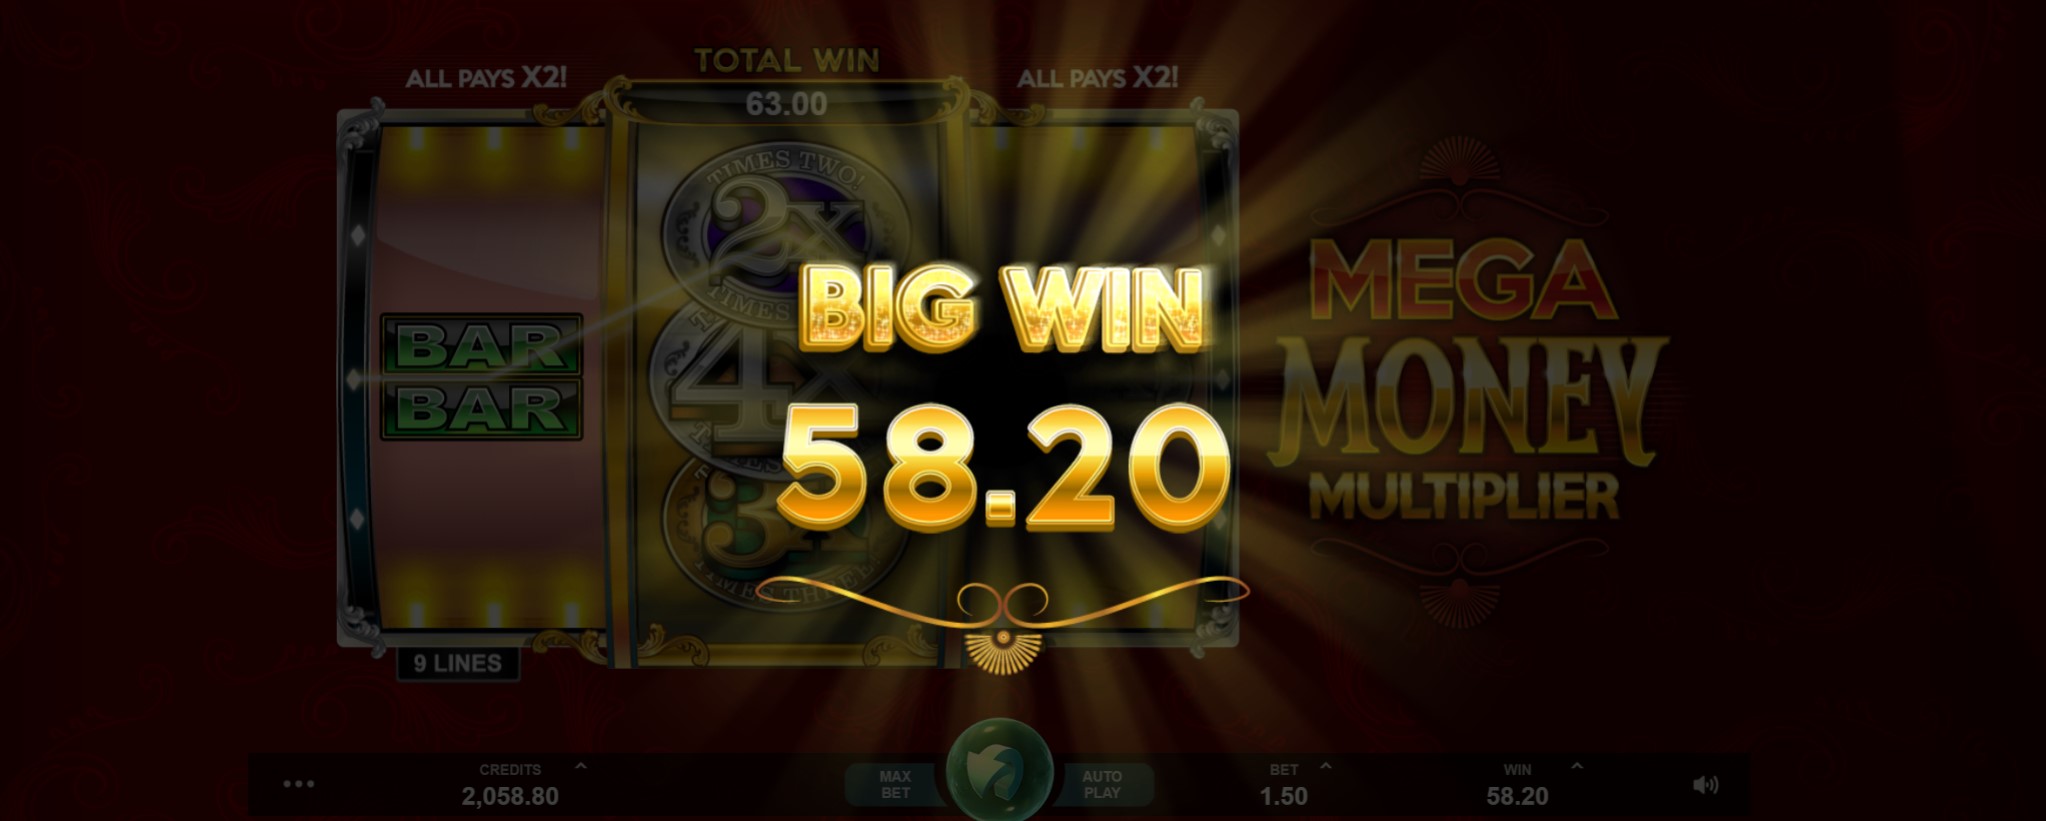 Mega Money Multiplier Slot review